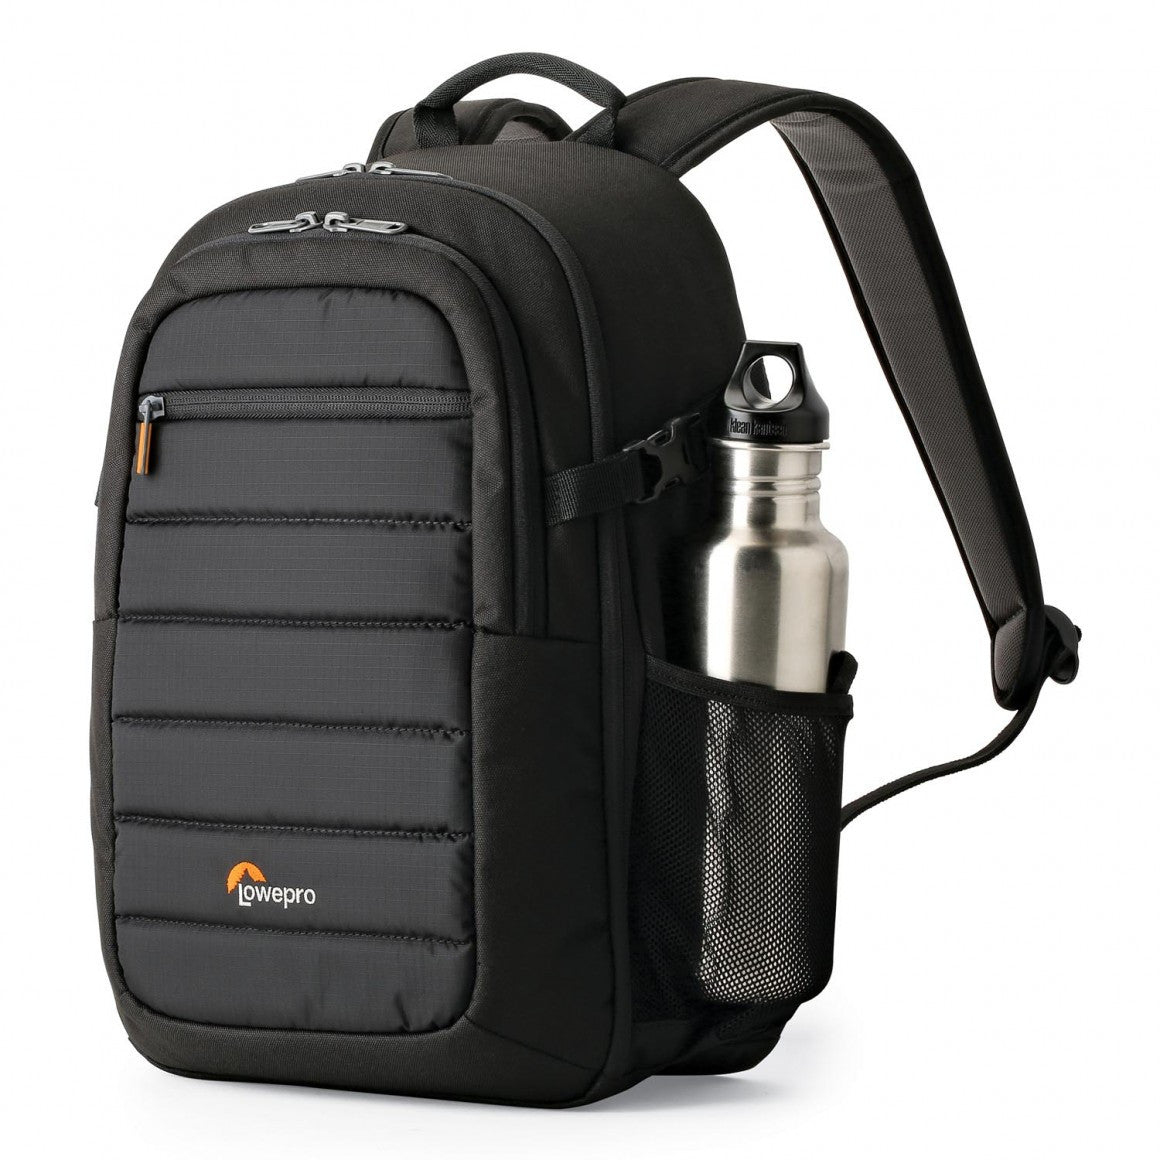 Lowepro Tahoe BP150 Backpack (Black), bags backpacks, Lowepro - Pictureline  - 1